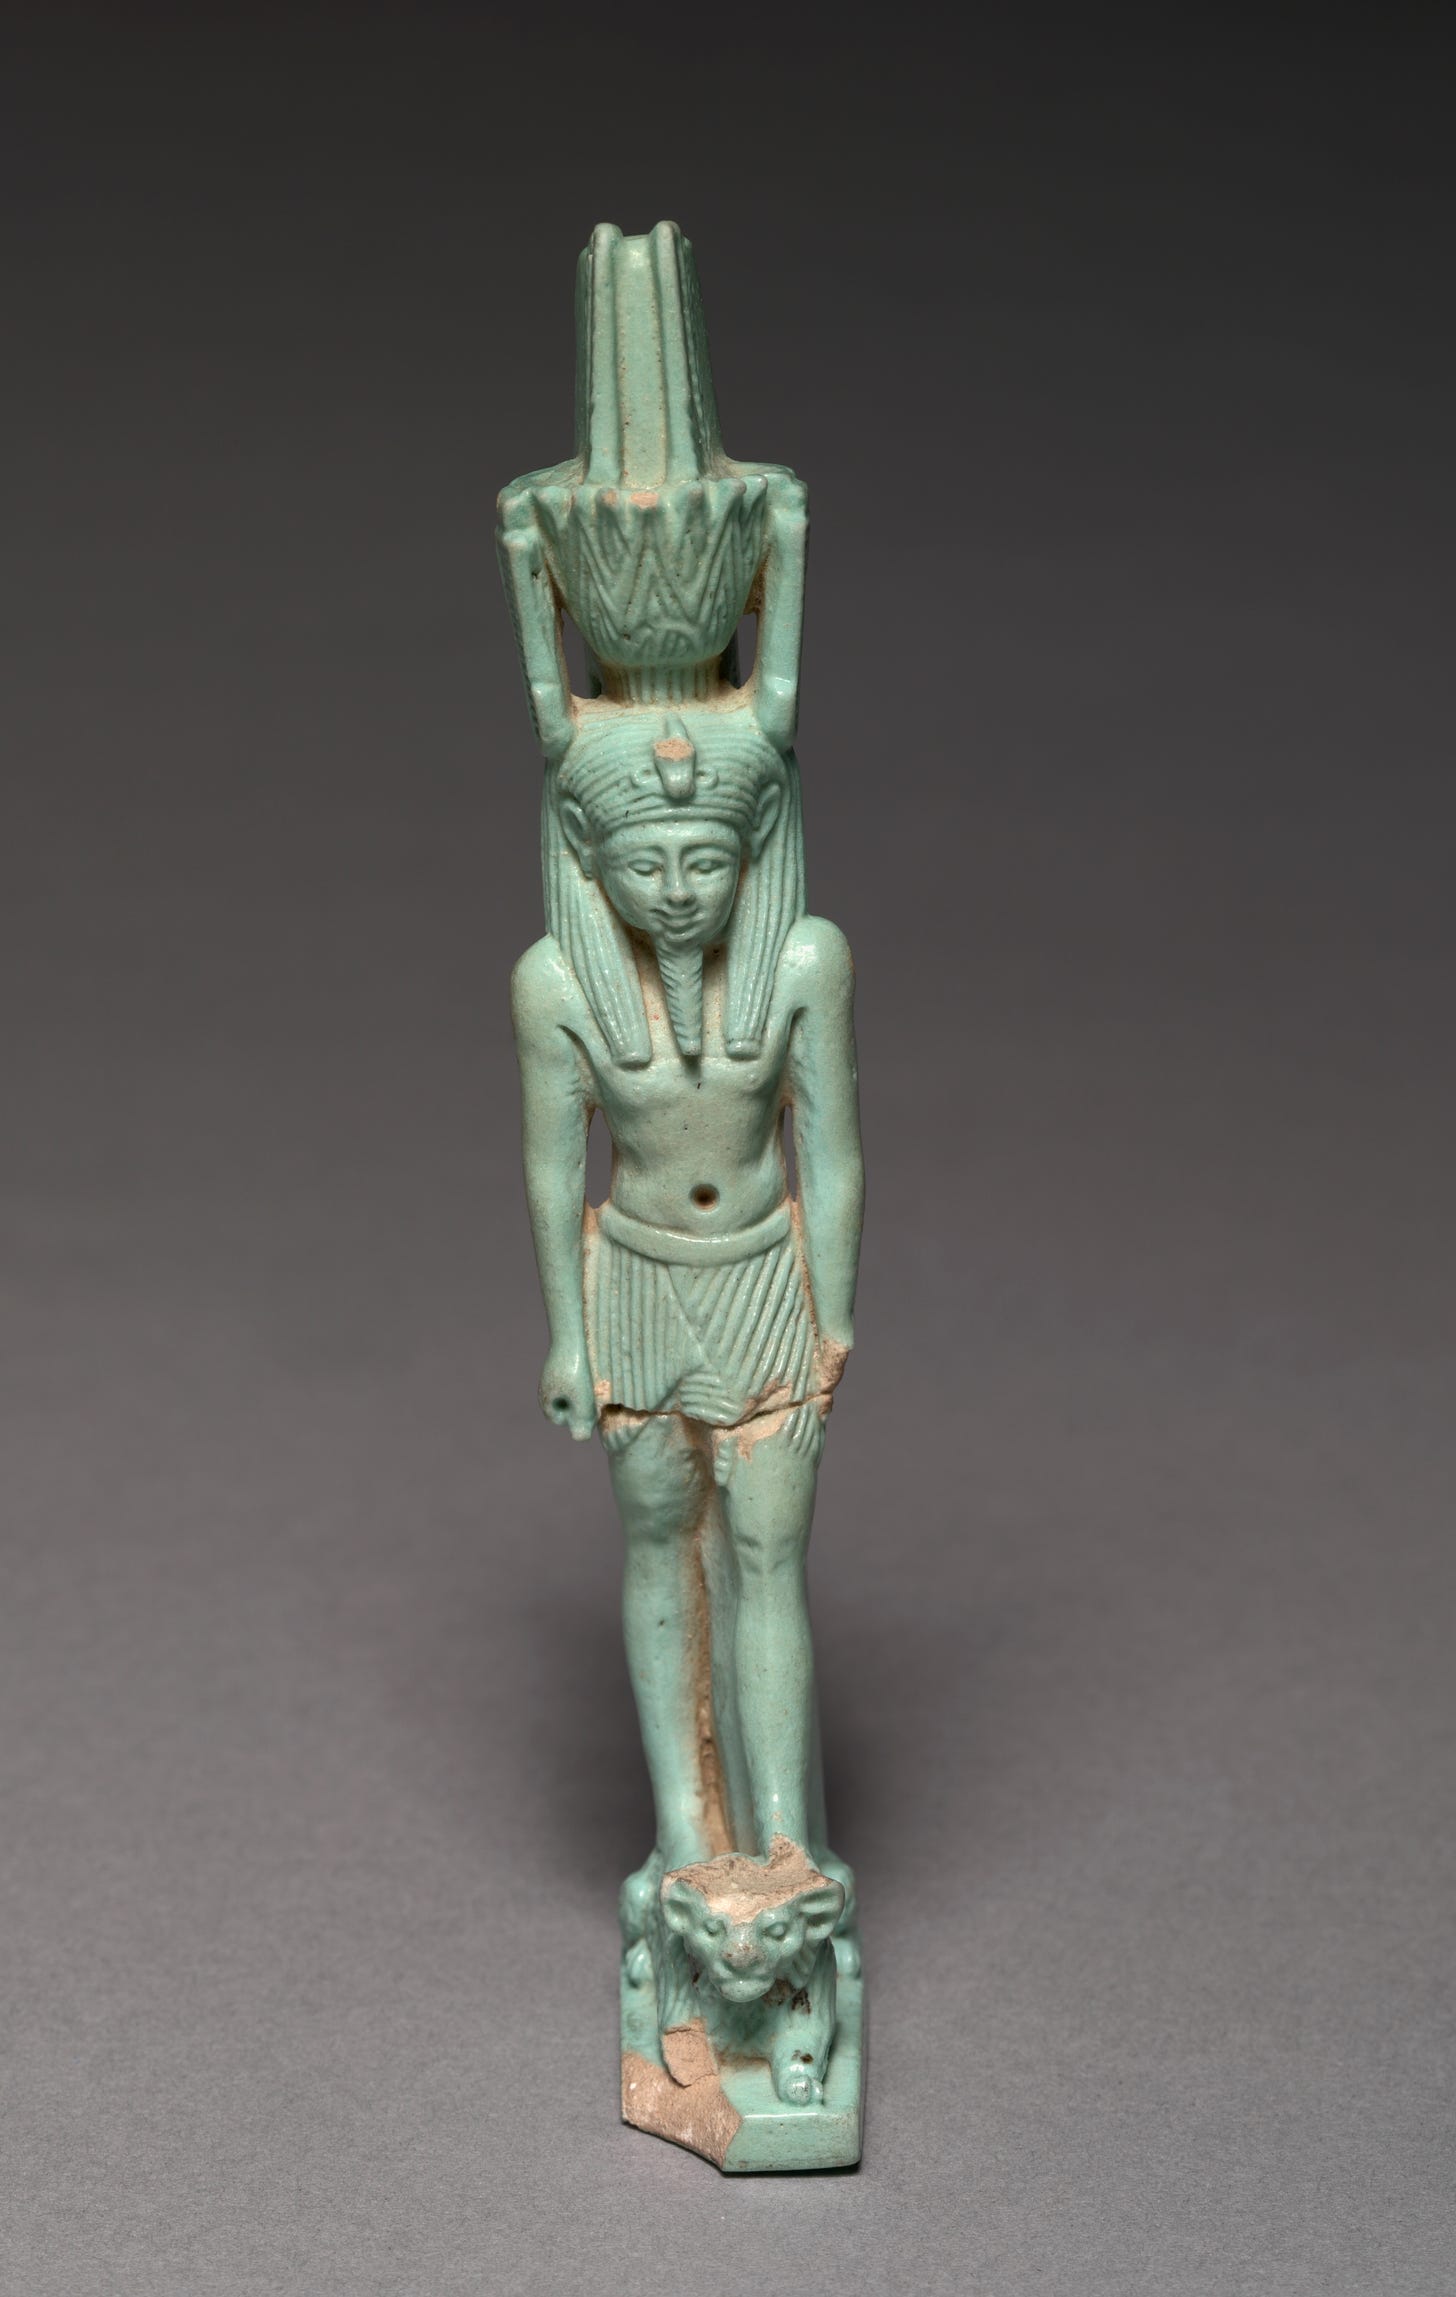 Nefertem - At The Egyptian Mythology